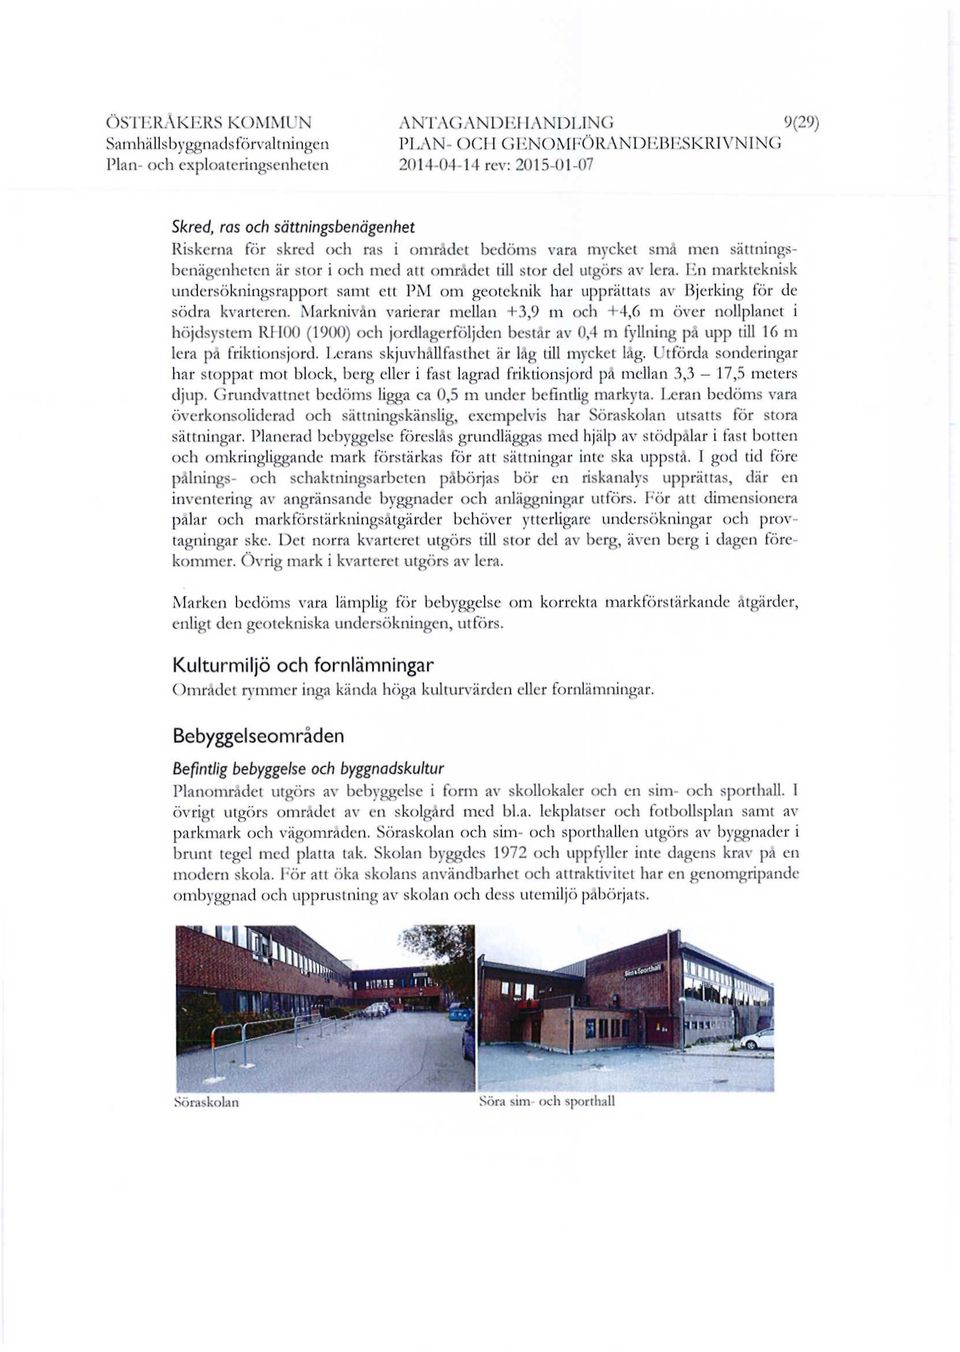 En markteknisk undersökningsrapport samt ett PM om geoteknik har upprättats av Bjerking för de södra kvarteren.